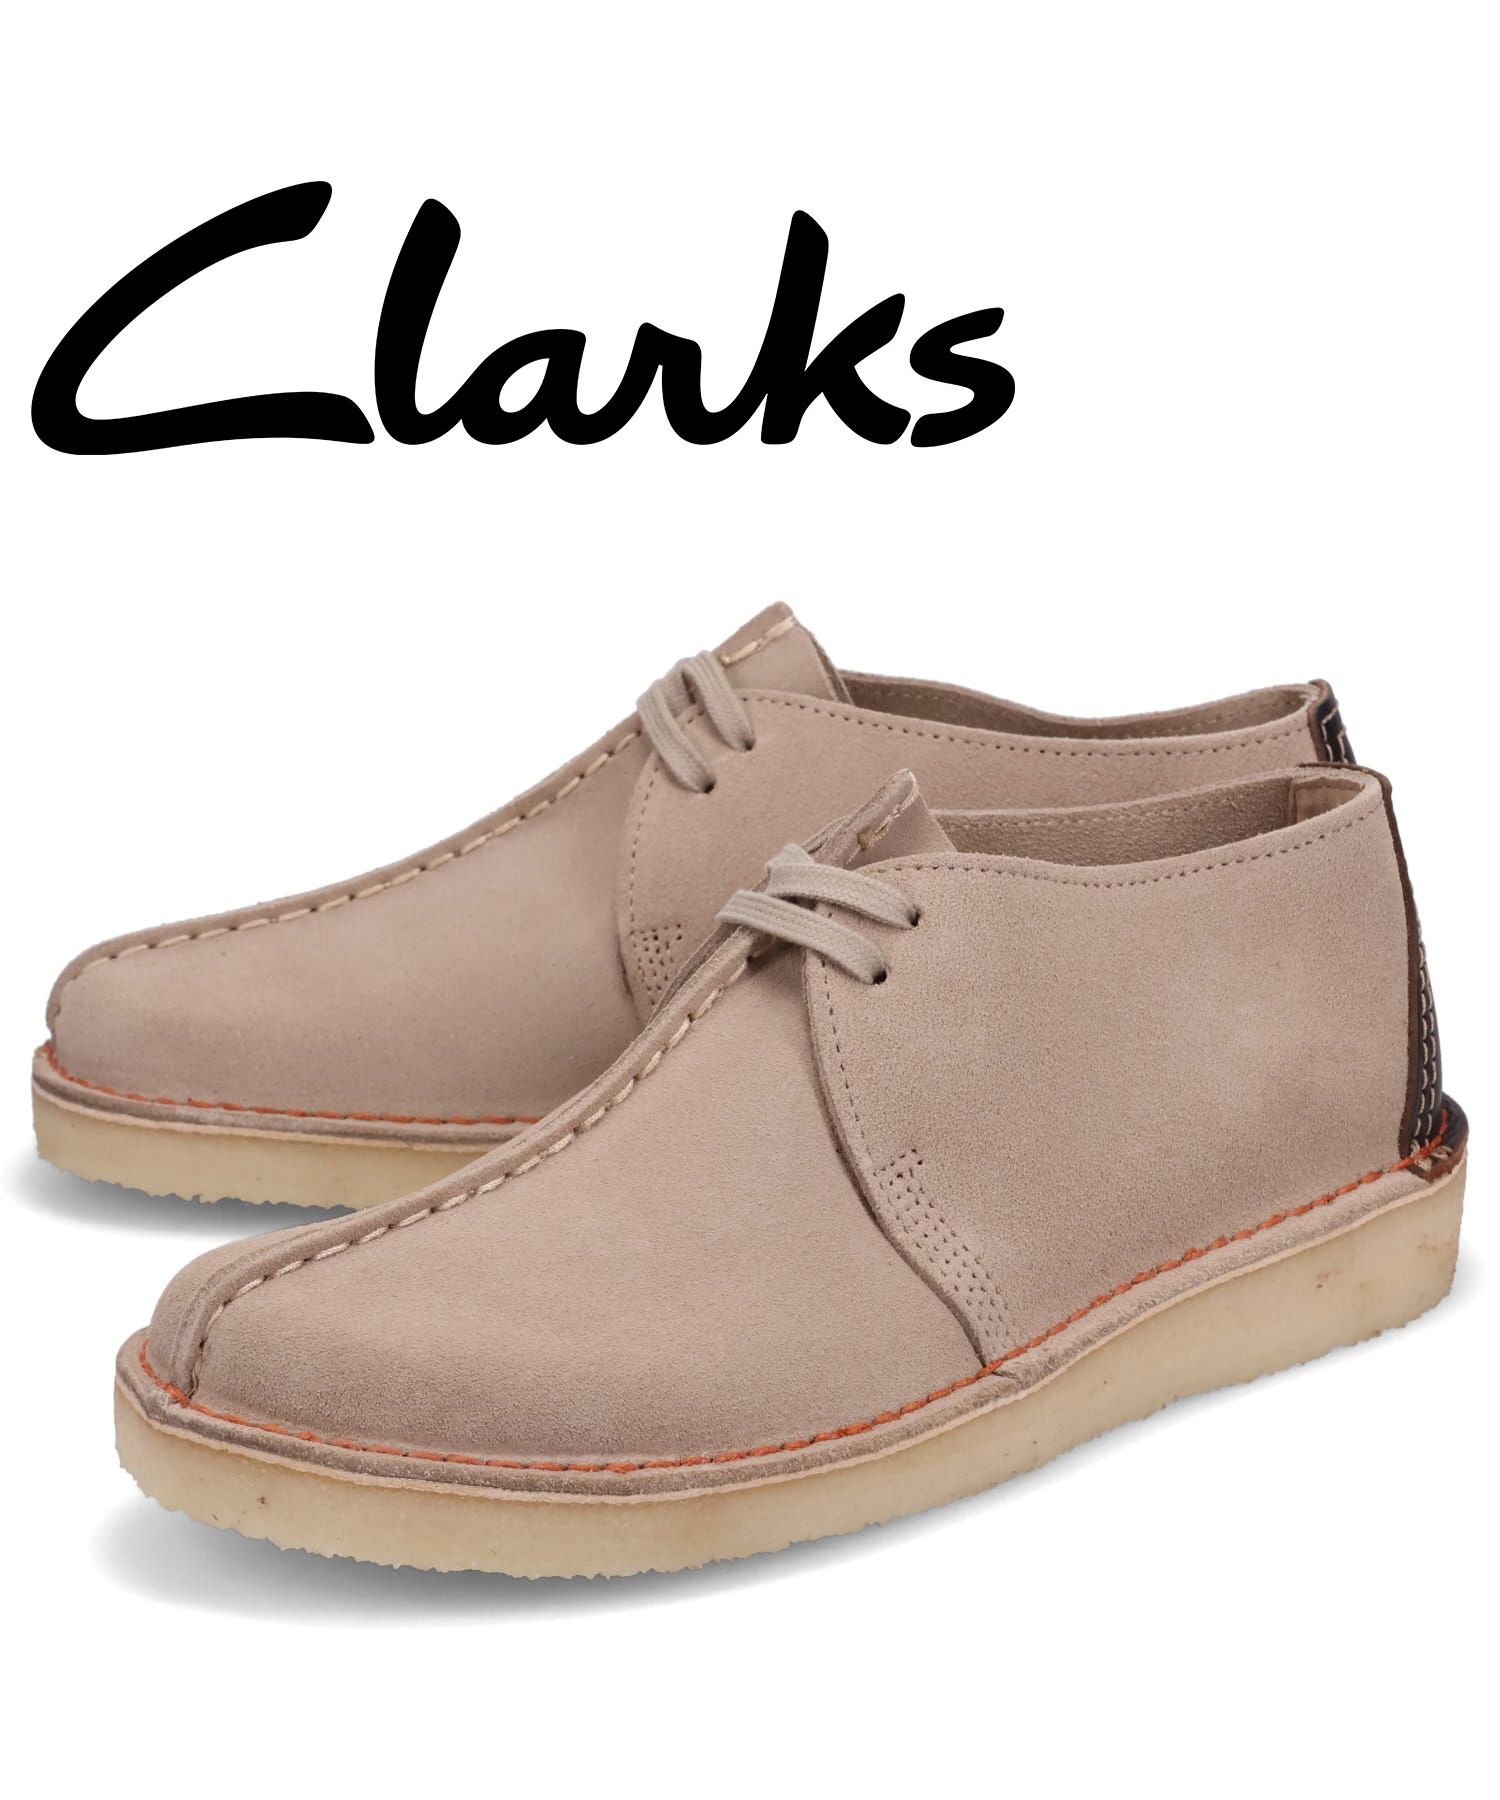 新品セール 送料無料 クラークス Clarks メンズ 男性用 シューズ 靴